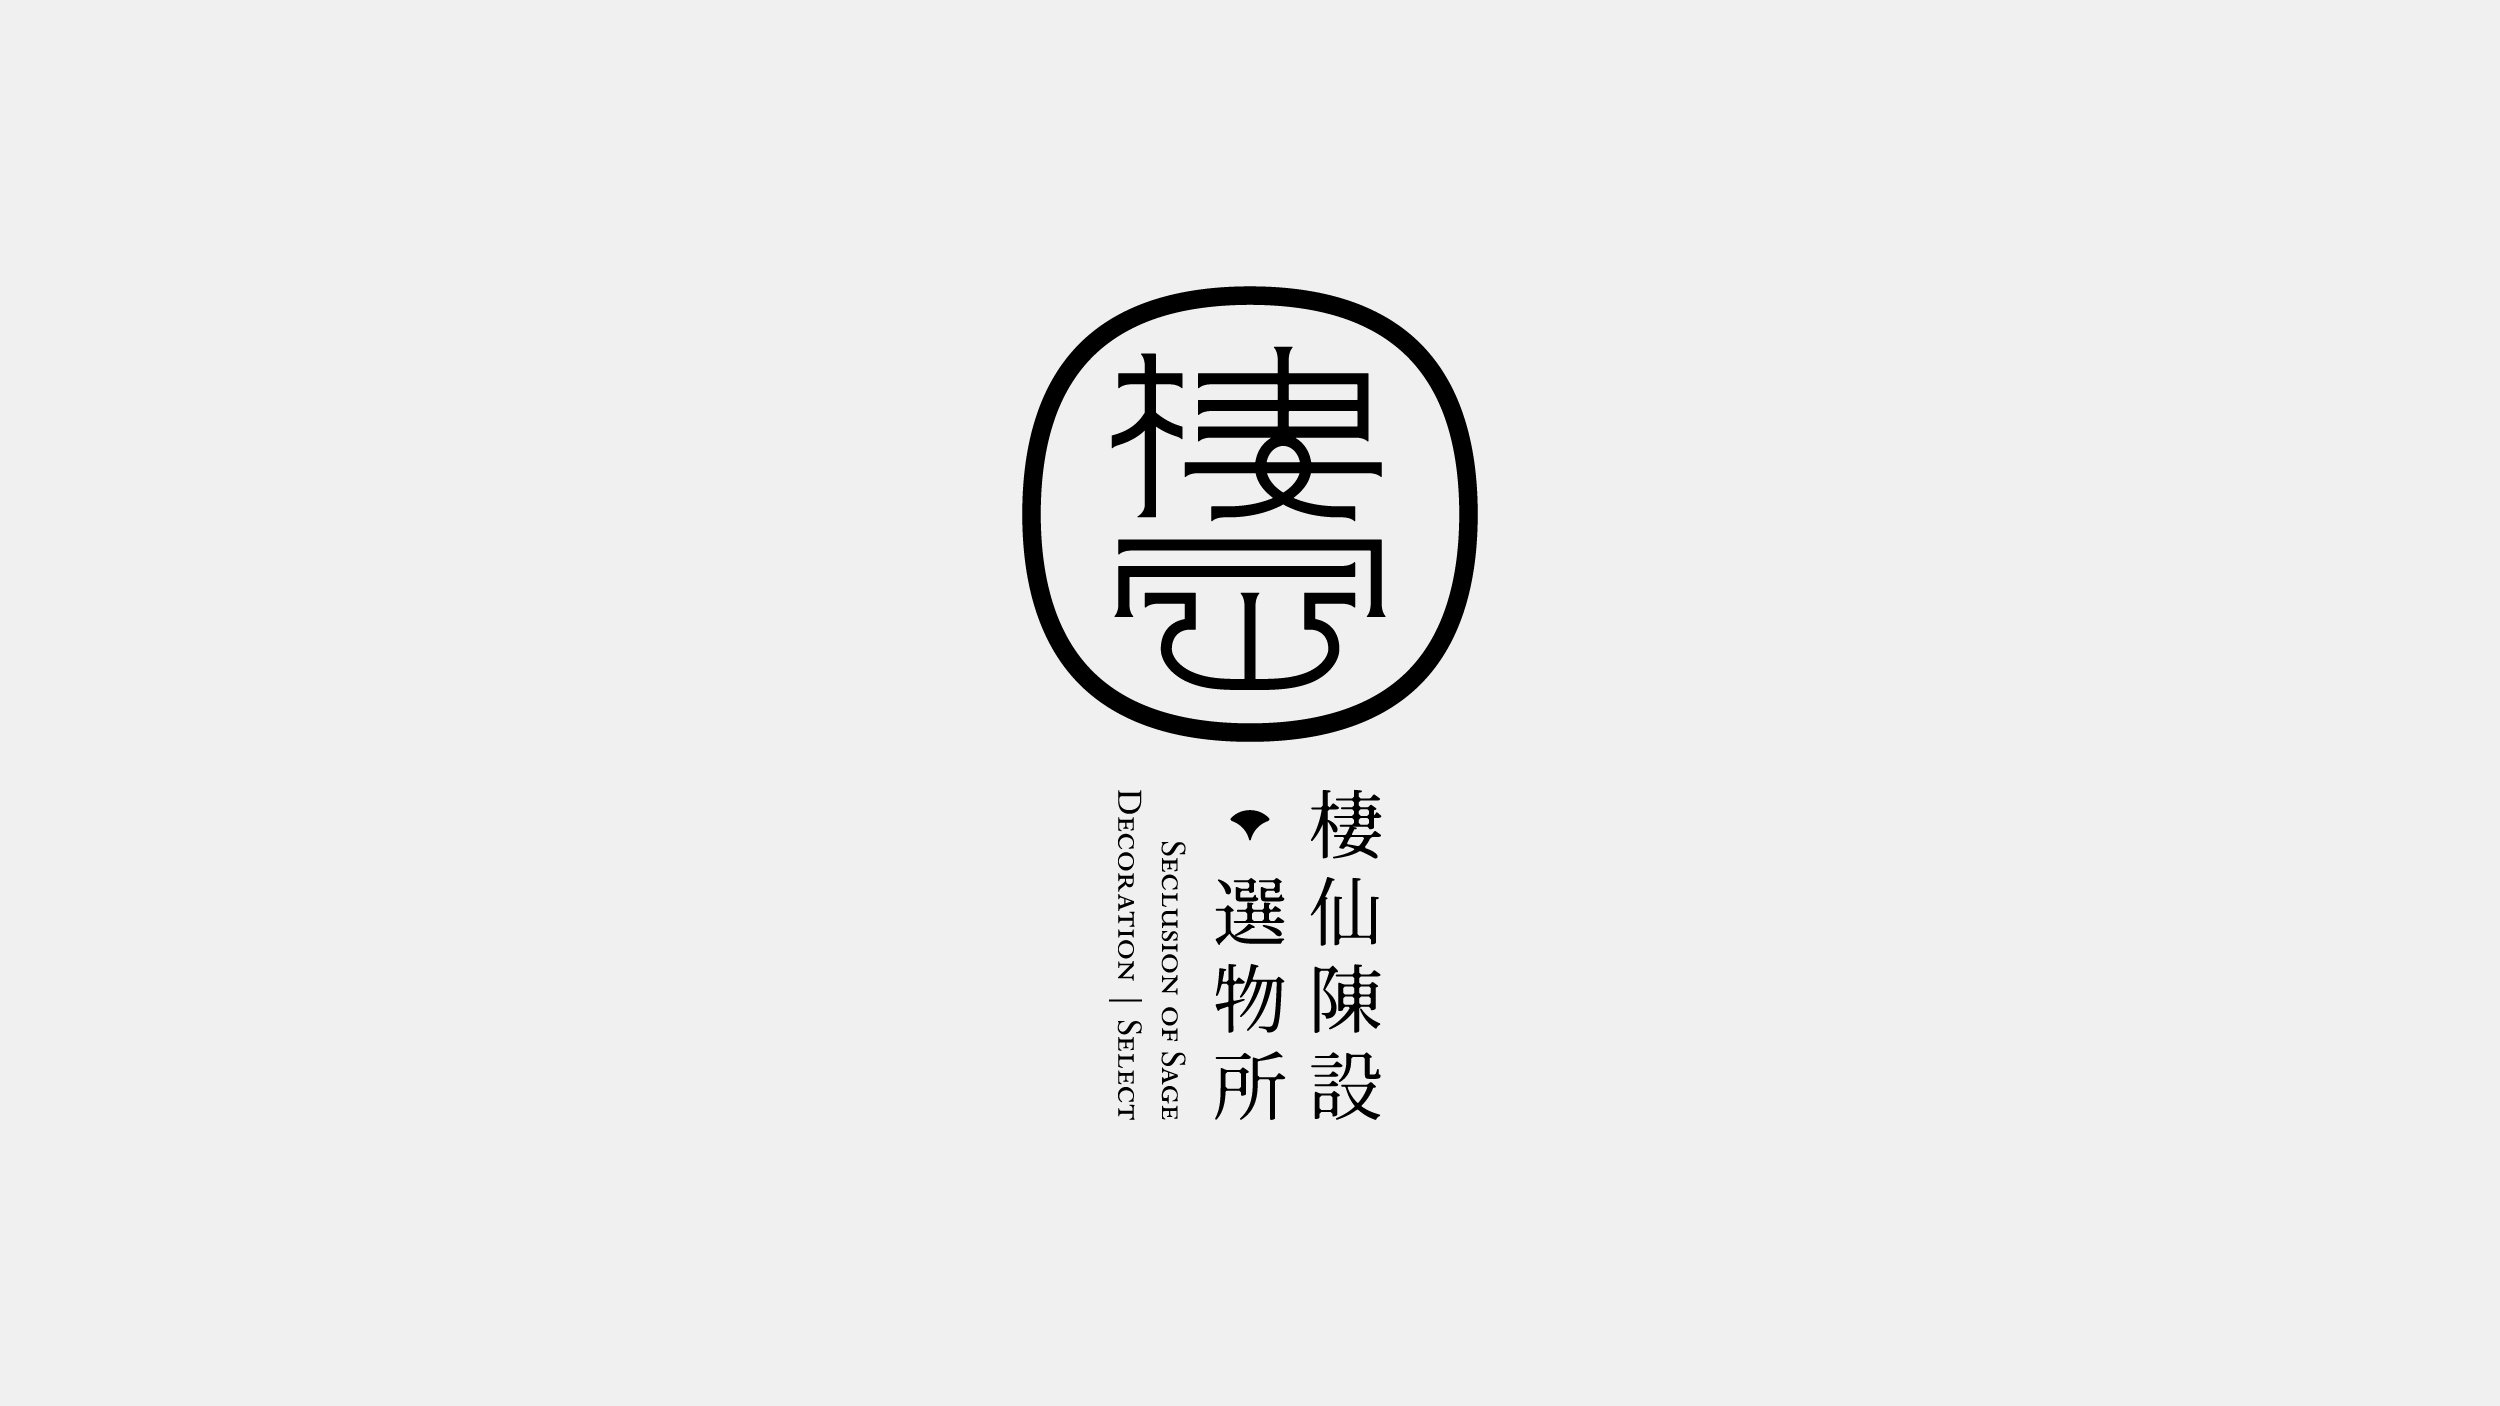 台湾设计工作室不毛logo设计作品